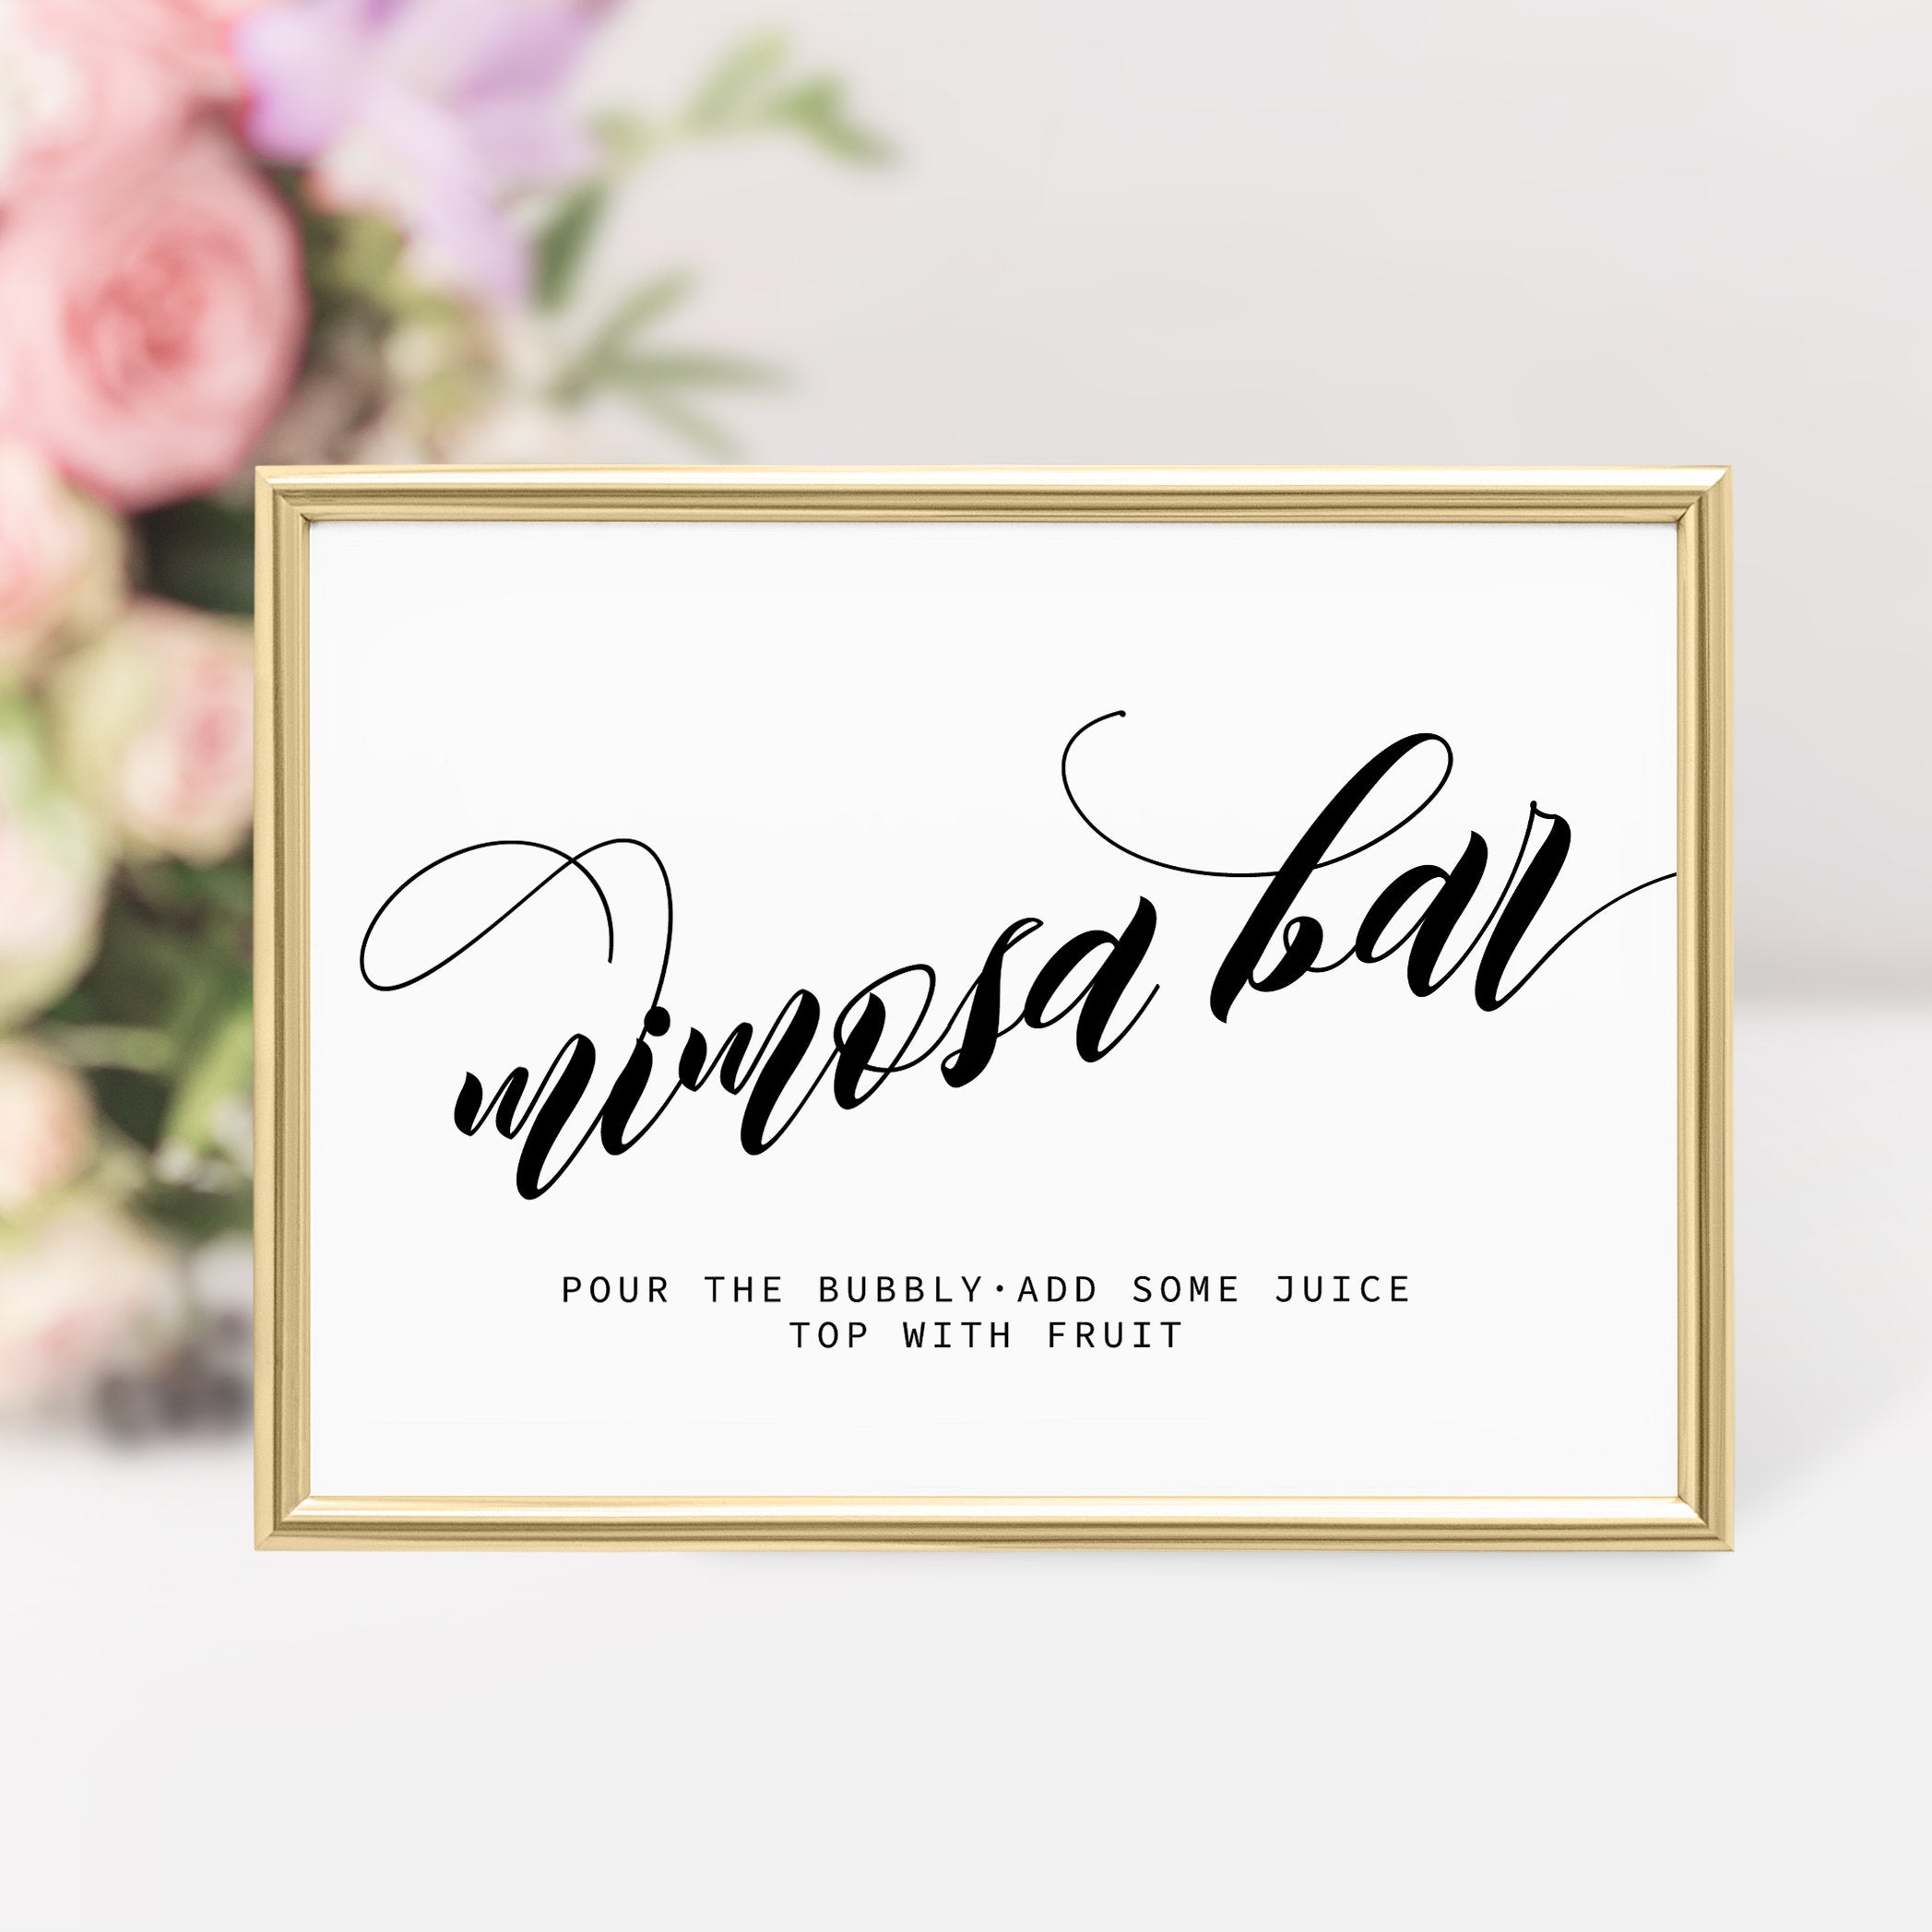 Mimosa Bar Sign, Bridal Shower Mimosa Bar Printable, Bubbly Bar Sign, Bridal Shower Decorations, DIGITAL DOWNLOAD - SFB100 - @PlumPolkaDot 